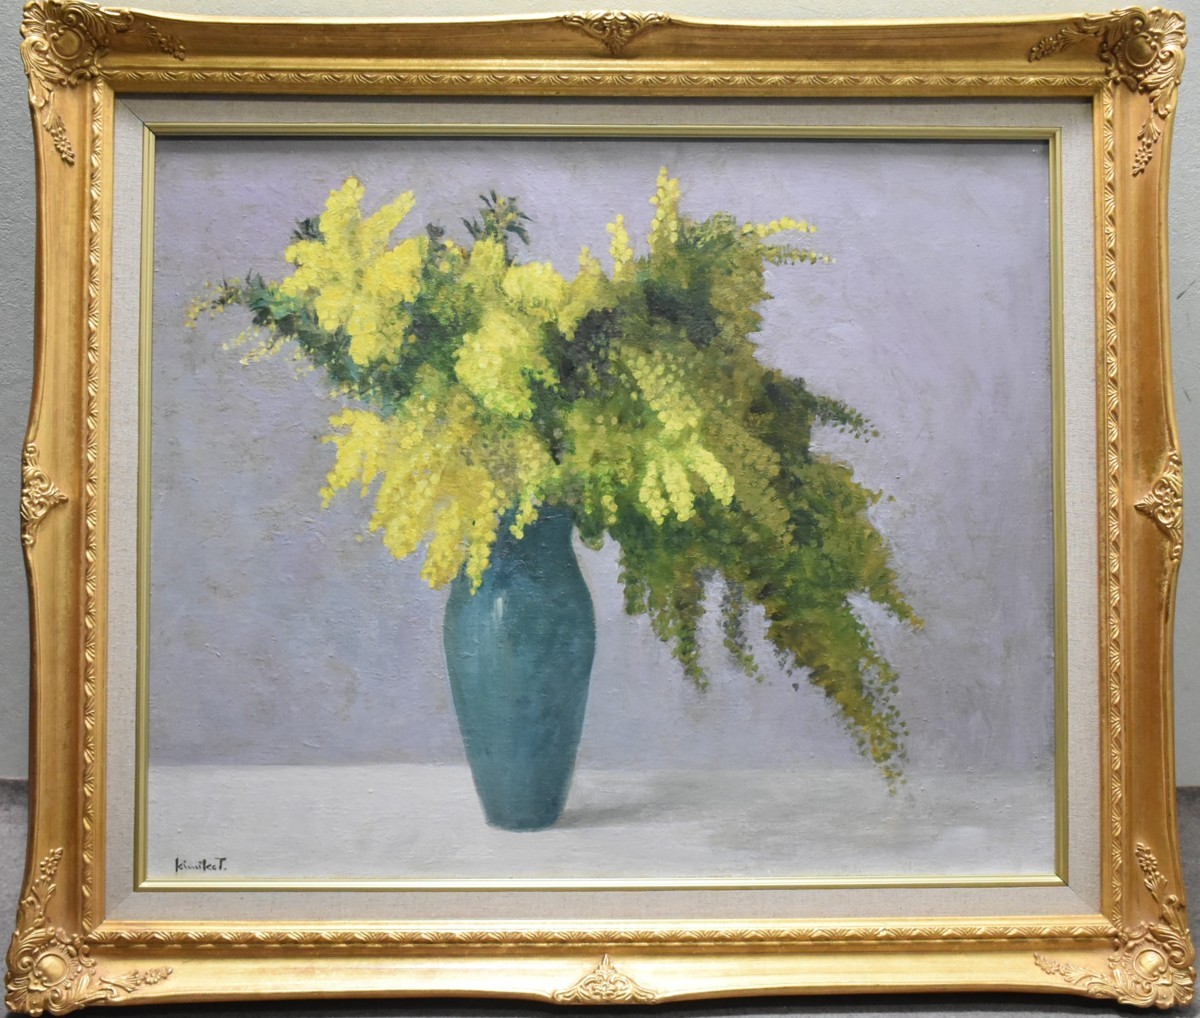 hermosa mimosa, ¡Las flores amarillas son auspiciosas! Kimiko Takamura, No. 12 Pintura al óleo de Mimosa [Galería Masami. 5, 000 piezas en exhibición!], Cuadro, Pintura al óleo, Naturaleza, Pintura de paisaje